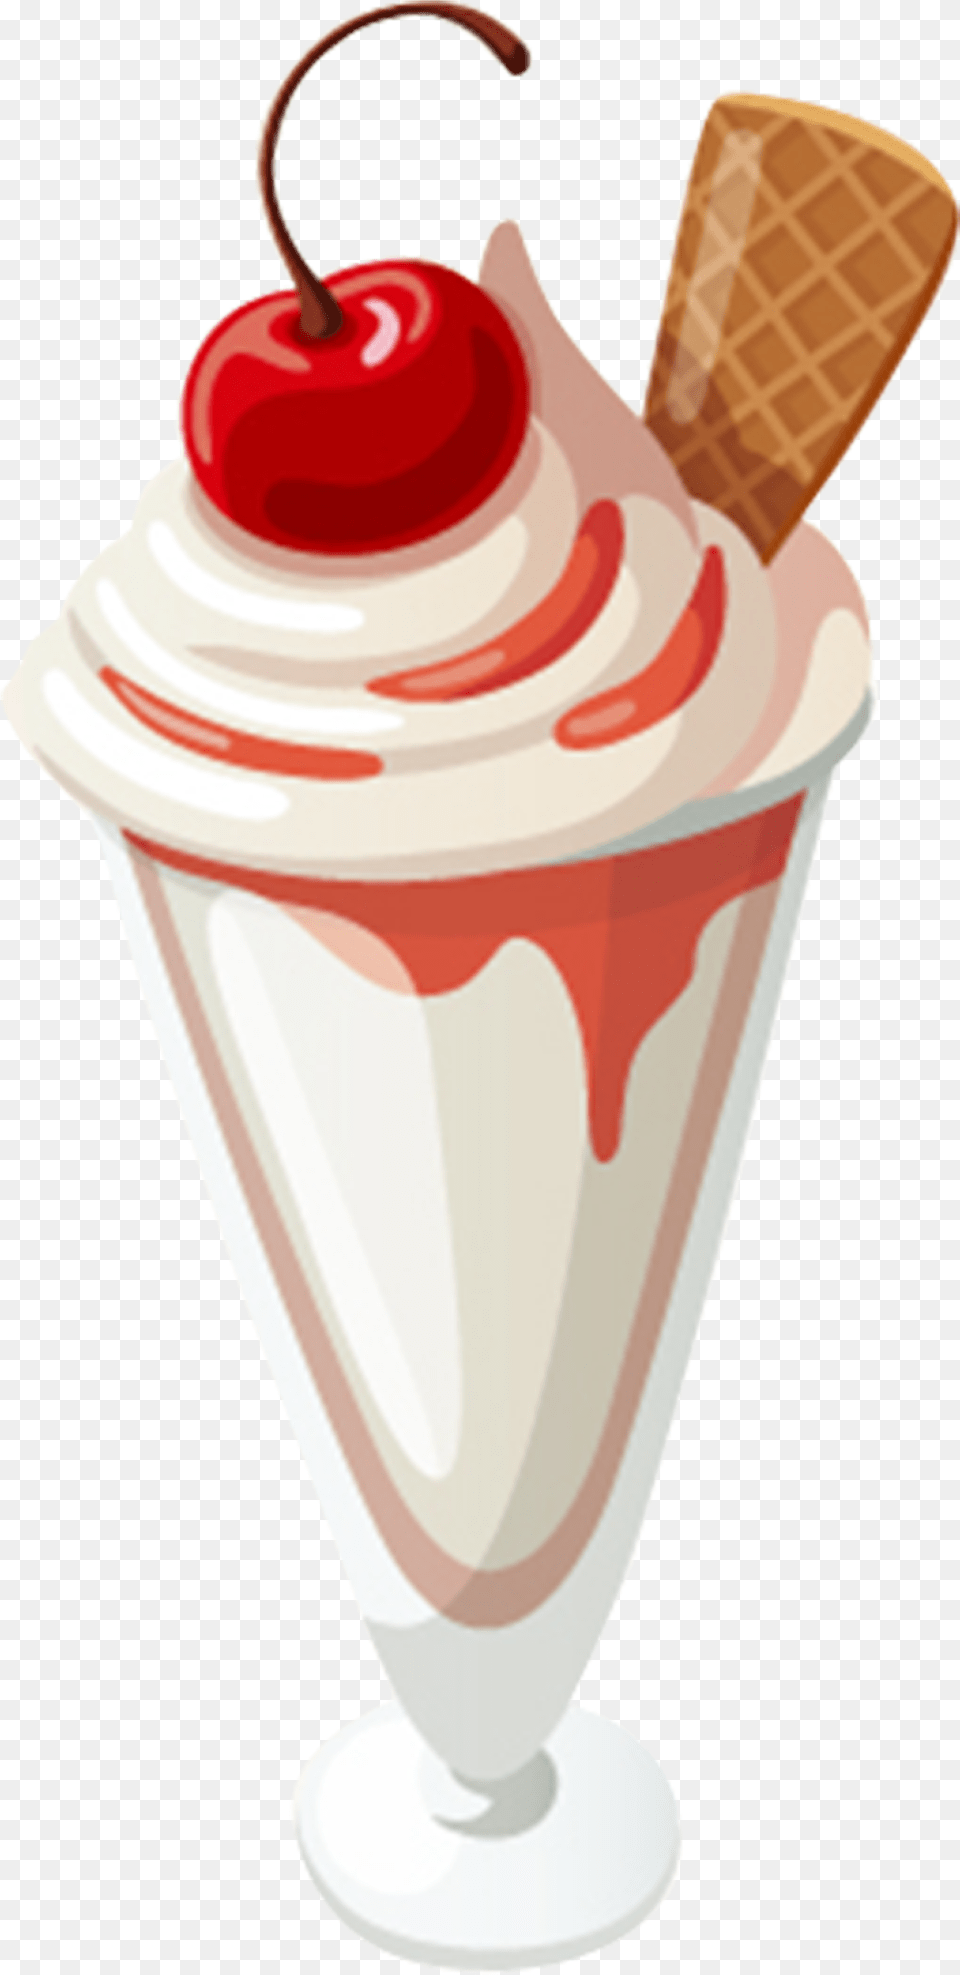 Milkshake Cartoon Animated Ice Cream Sundae, Dessert, Food, Ice Cream, Bottle Png Image